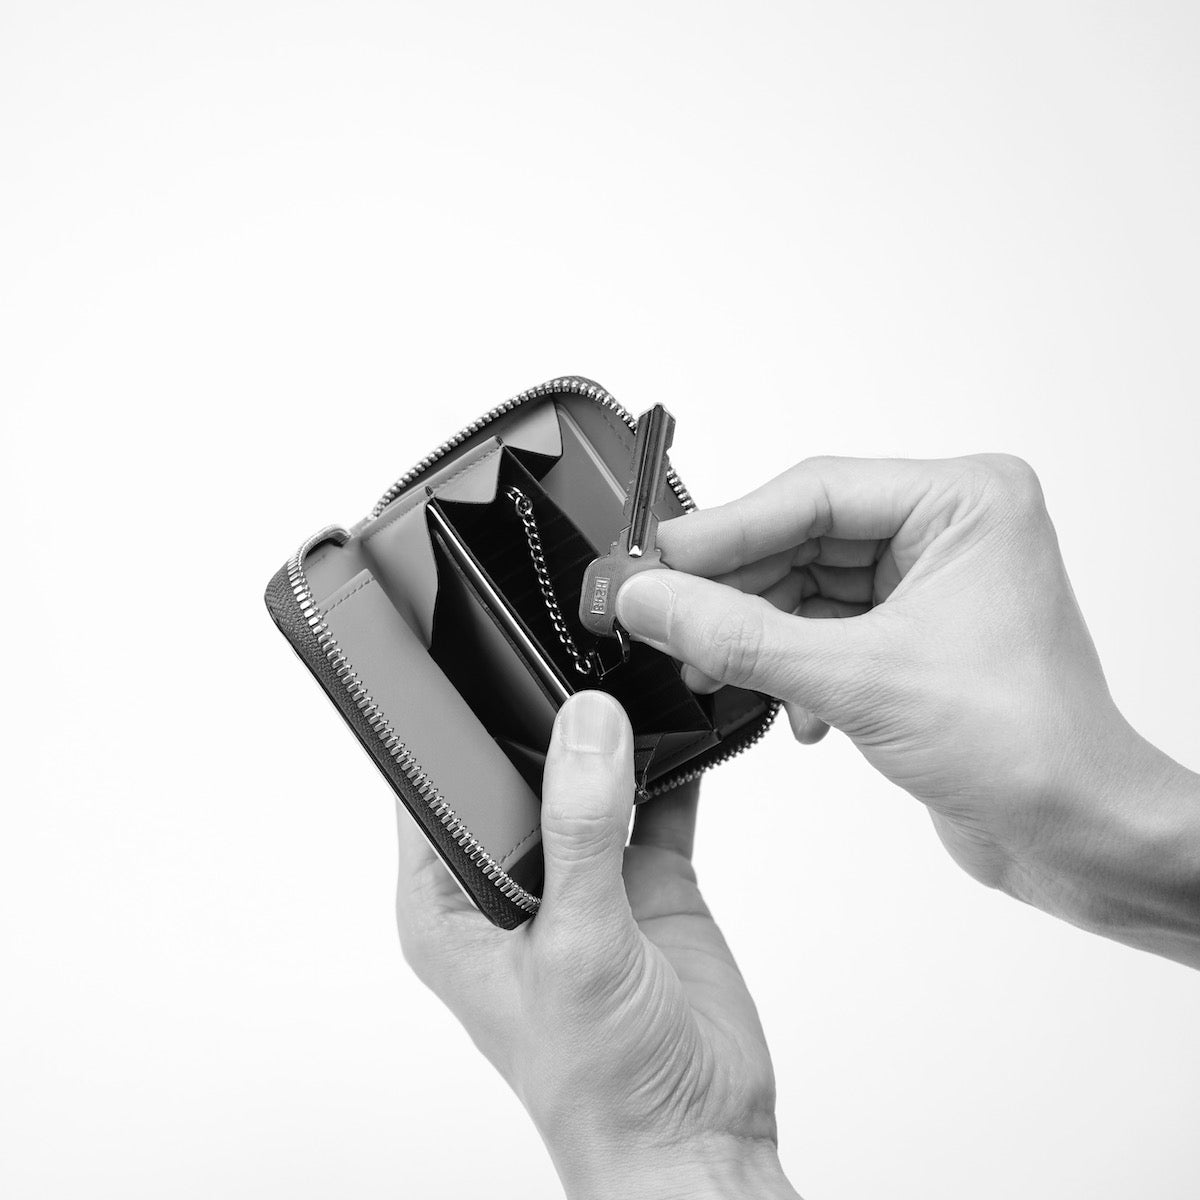 ITTI (イッチ) | CRISTY COIN CARD WLT / BRIDLE CROCO(クリスティコインカードウォレット/ブライドルクロコダイルレザー)さいふ 財布 サイフ エキゾチック ミニ キャッシュレス 黒 ブラック